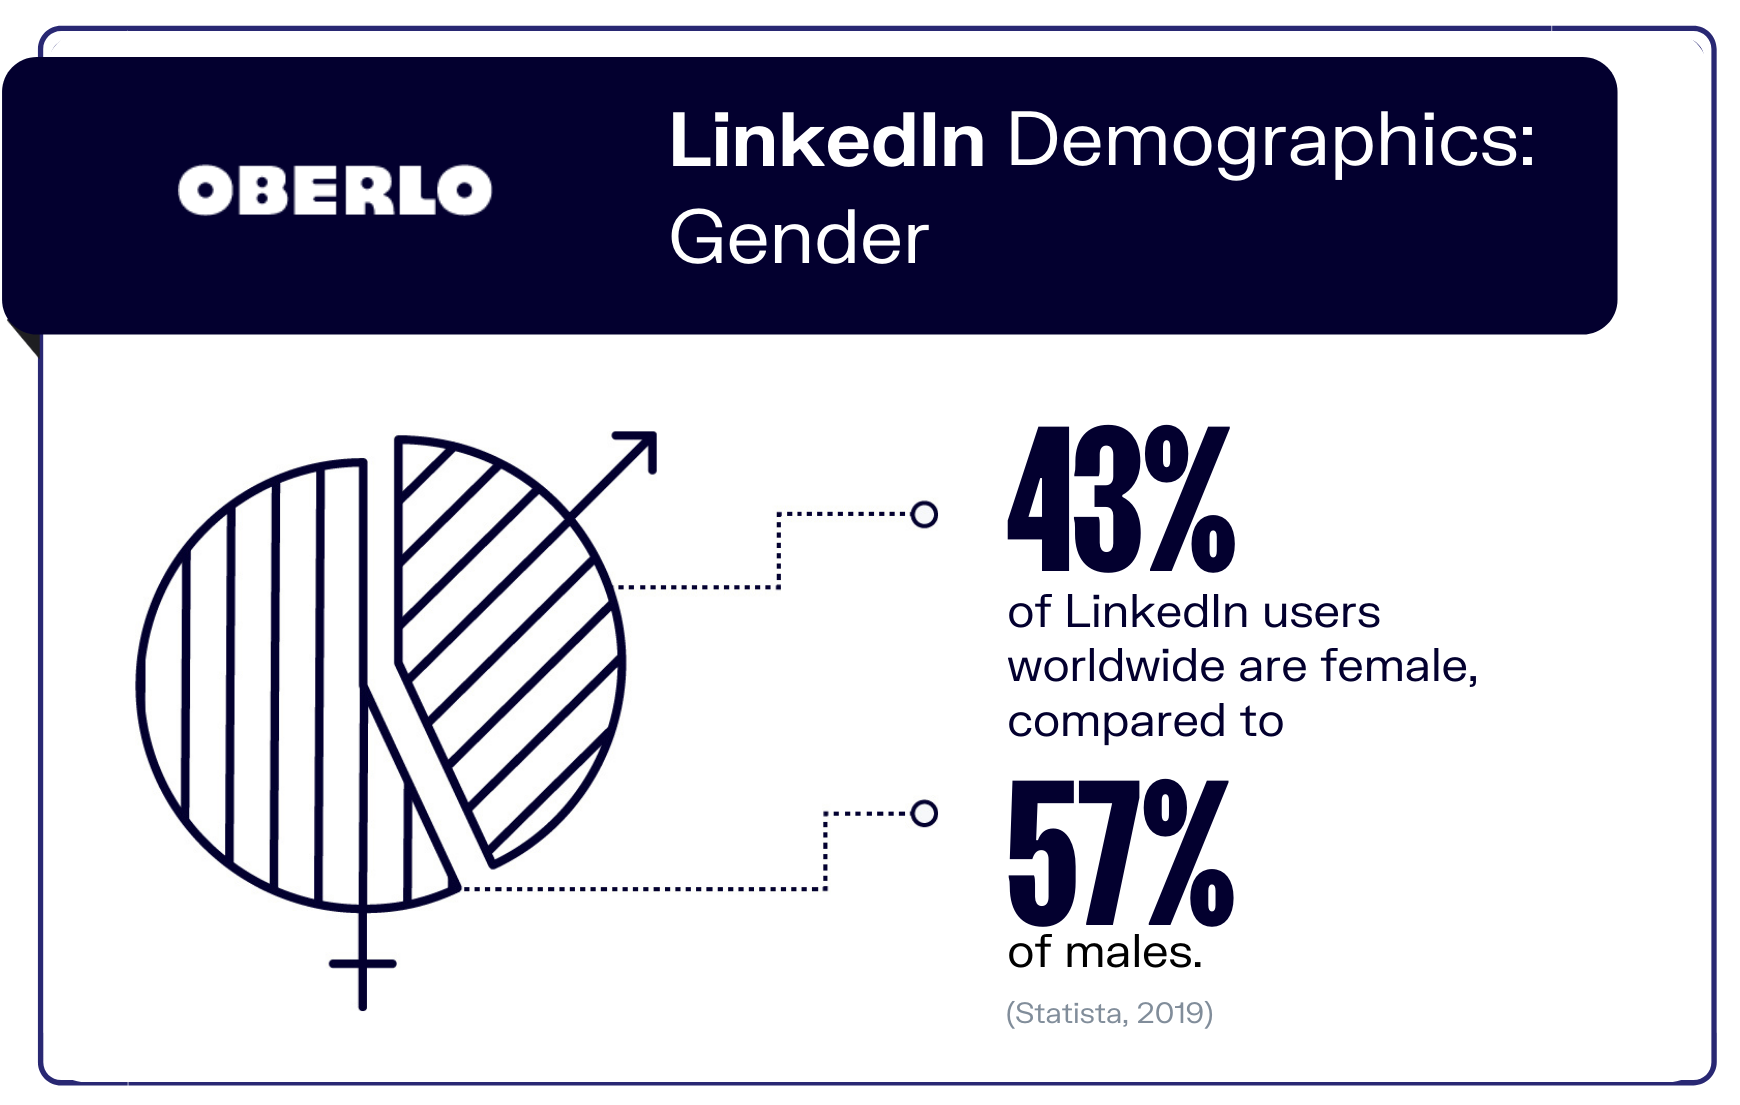 Datos demográficos de LinkedIn: gráfico de género